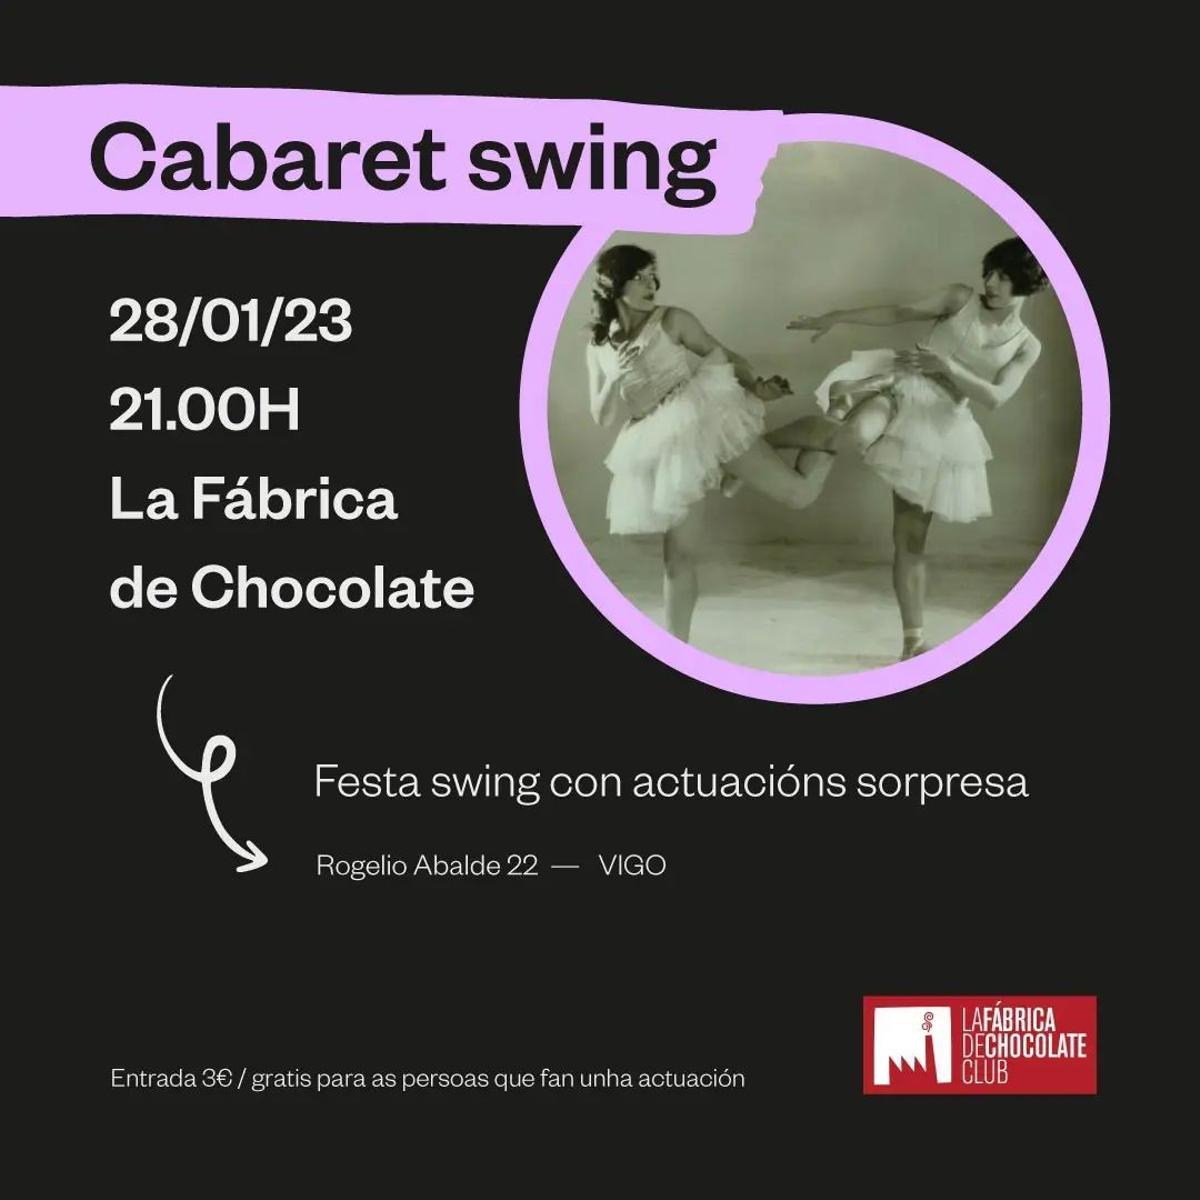 Cartel de la fiesta swing que se celebra esta noche en La Fábrica de Chocolate.